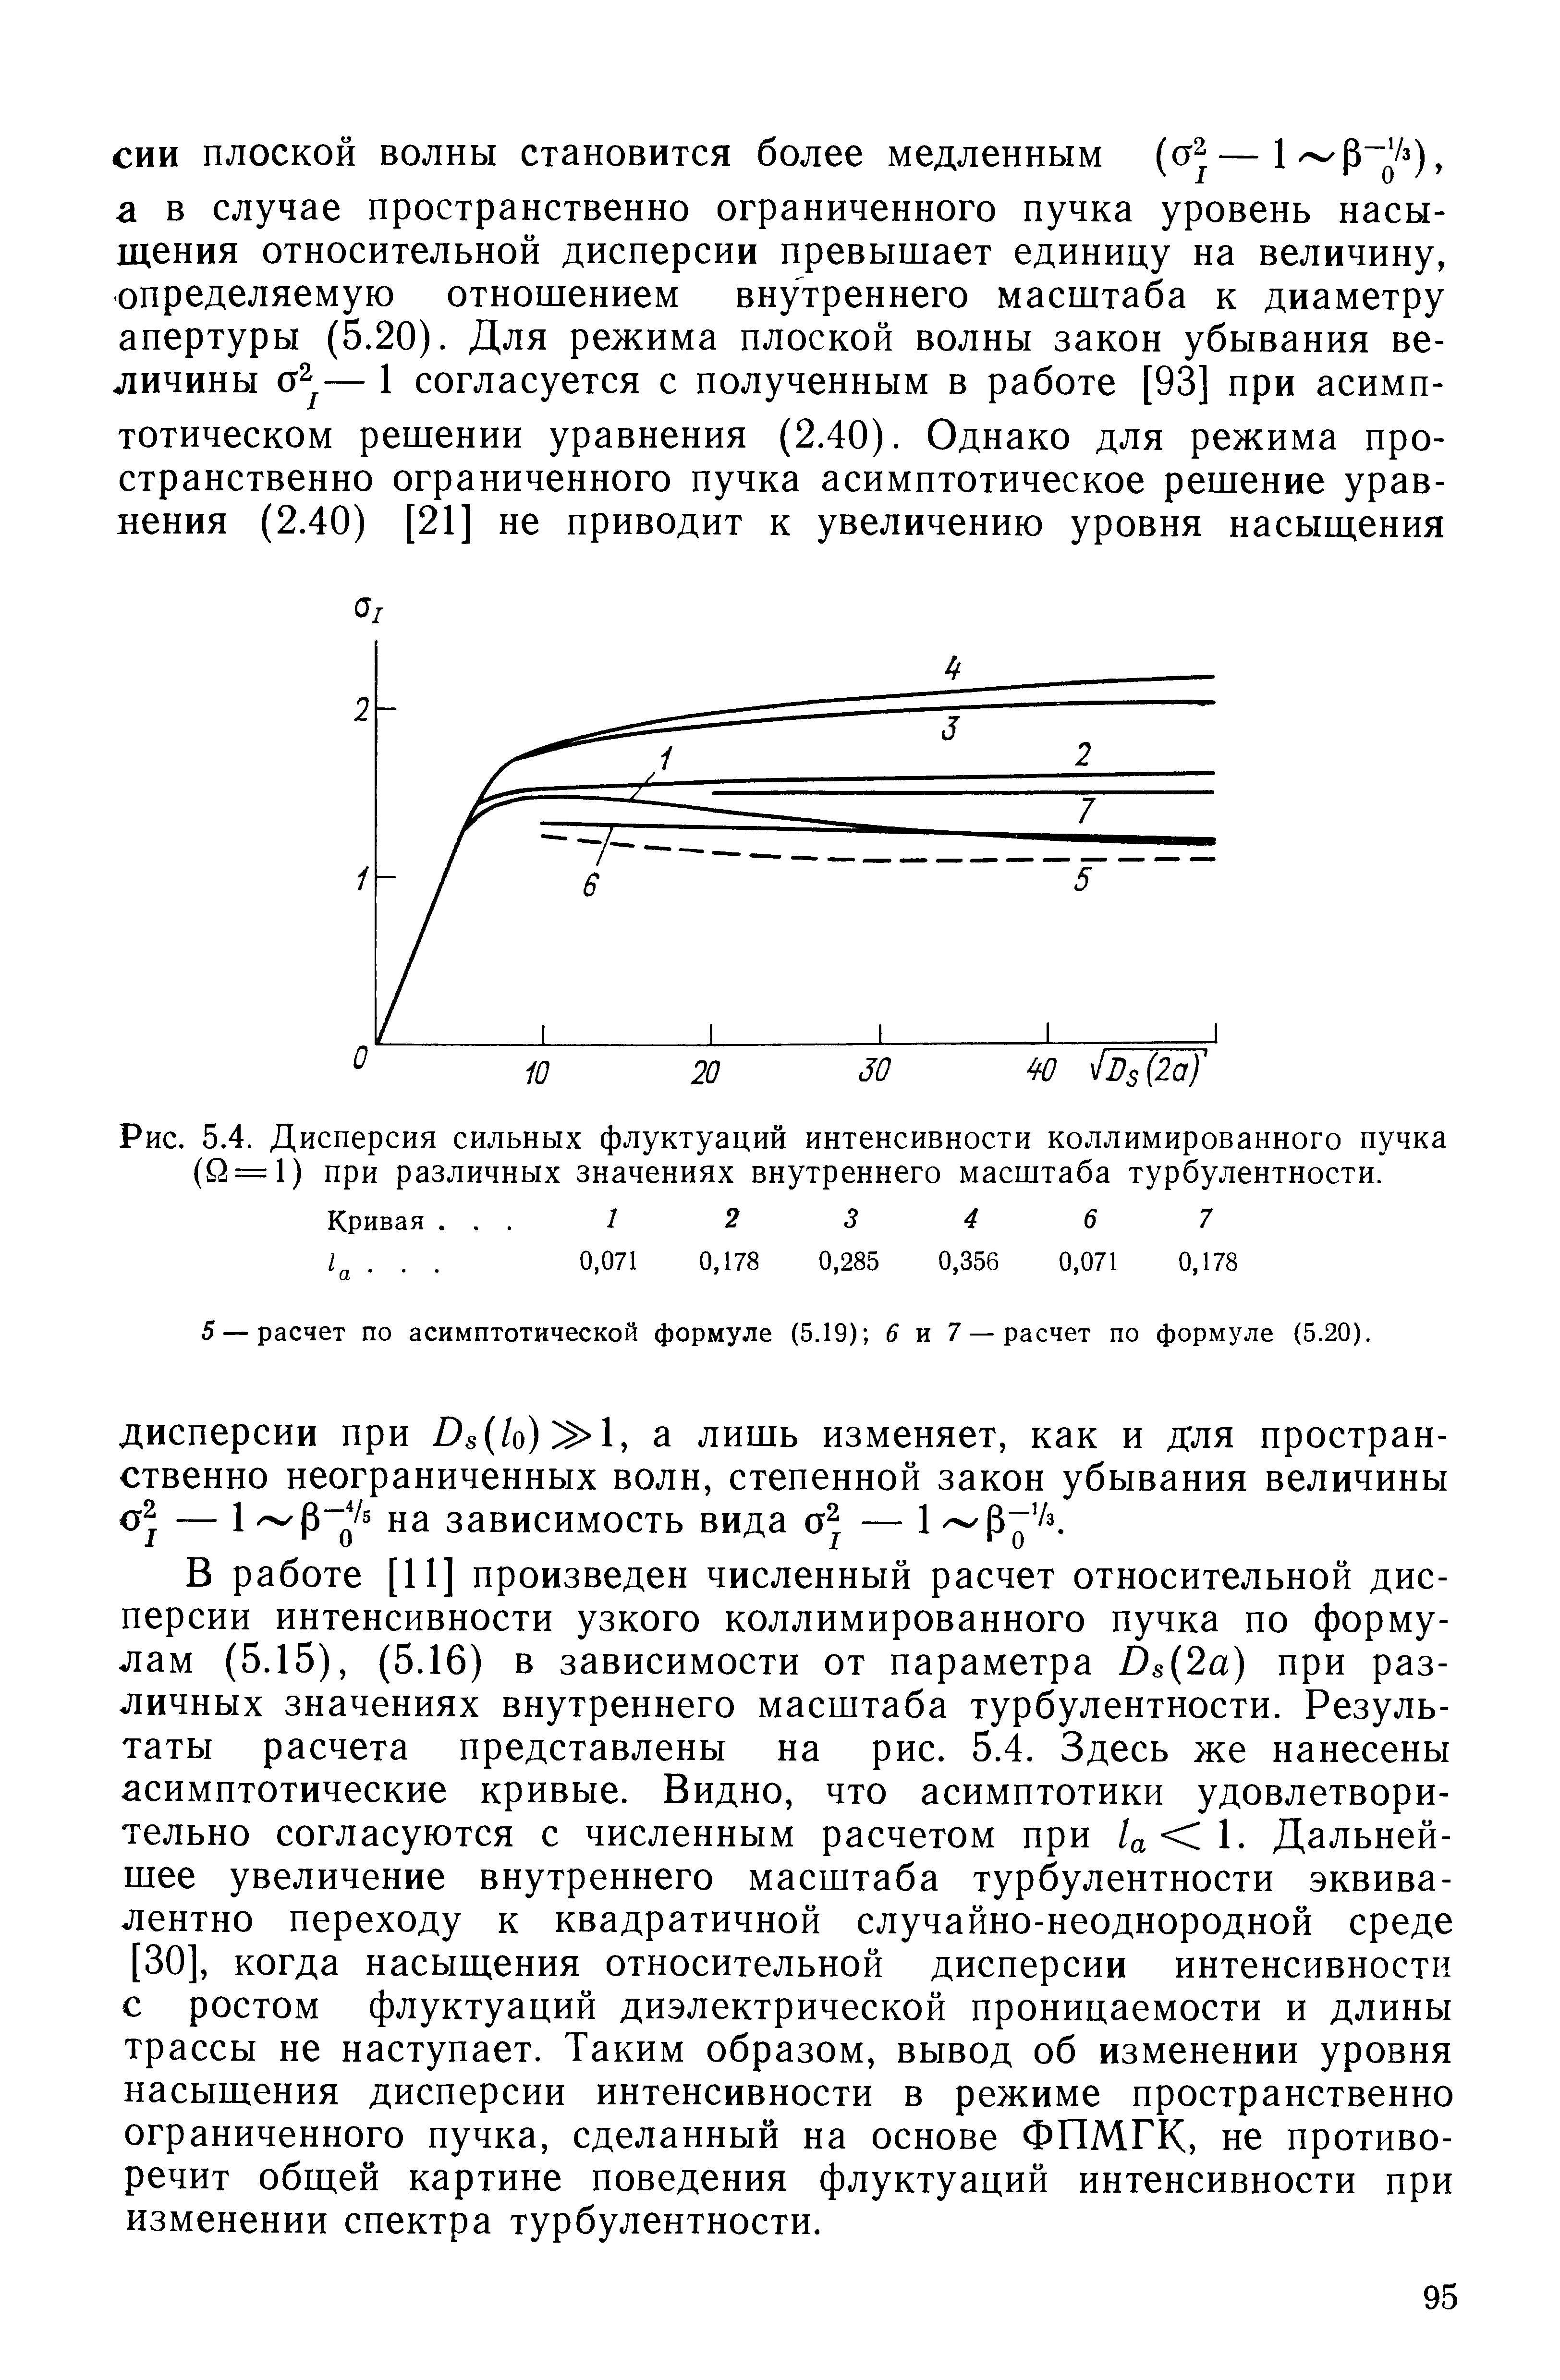 Рис. 5.4. Дисперсия сильных флуктуаций интенсивности коллимированного пучка (Й = 1) при различных значениях внутреннего масштаба турбулентности.
